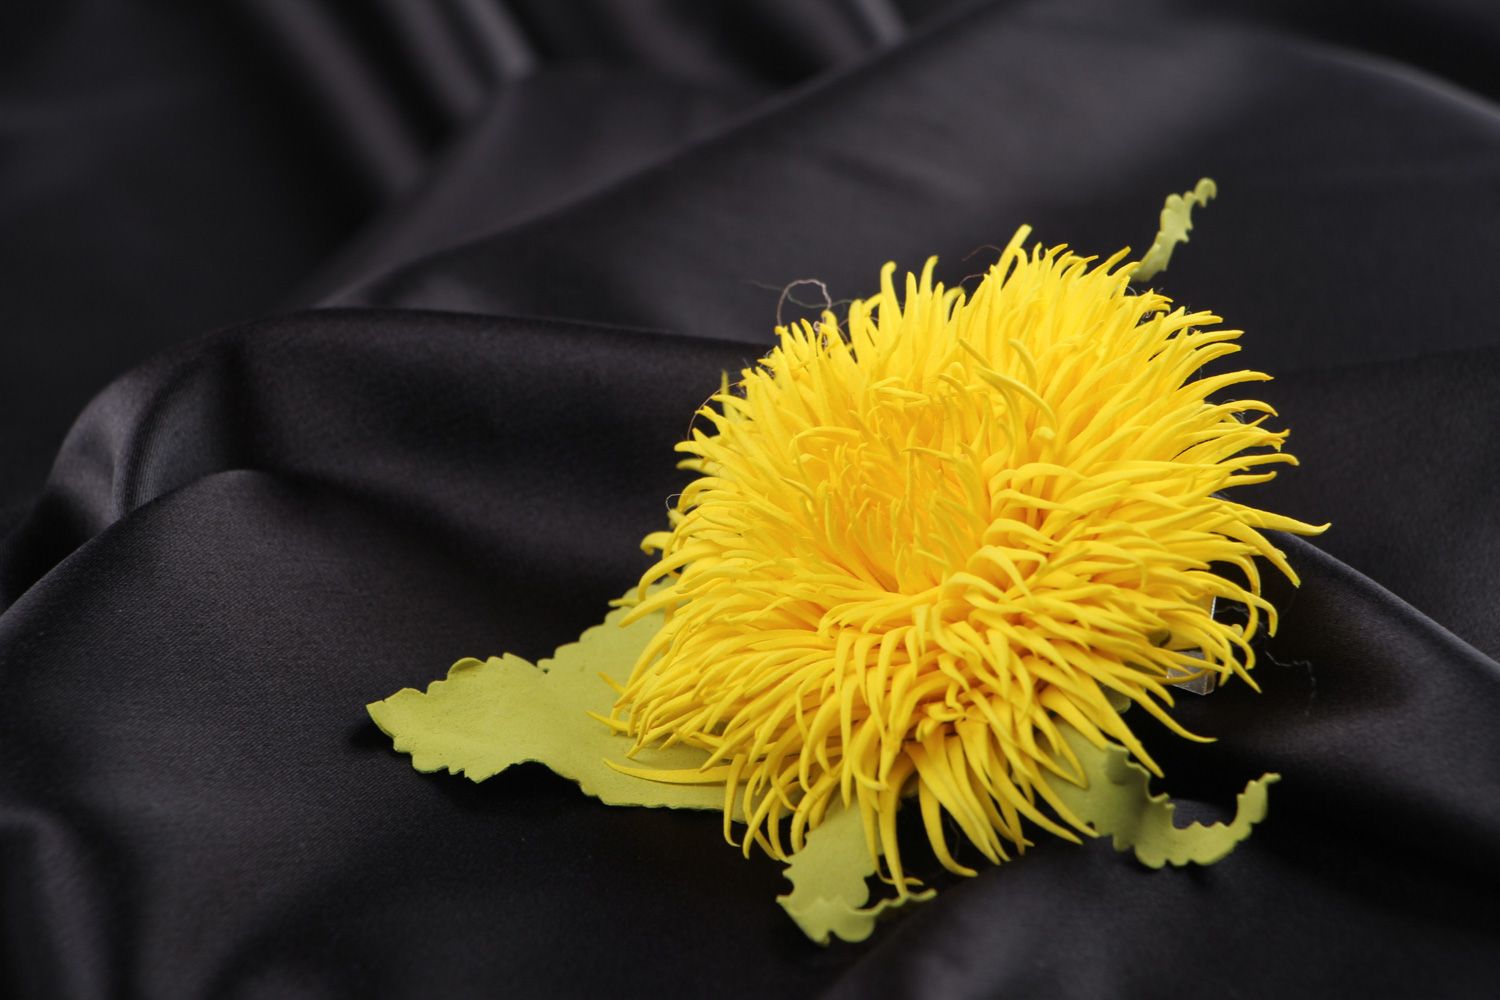 Брошь-заколка из пластичной замши ручной работы в виде пышного желтого цветка фото 1